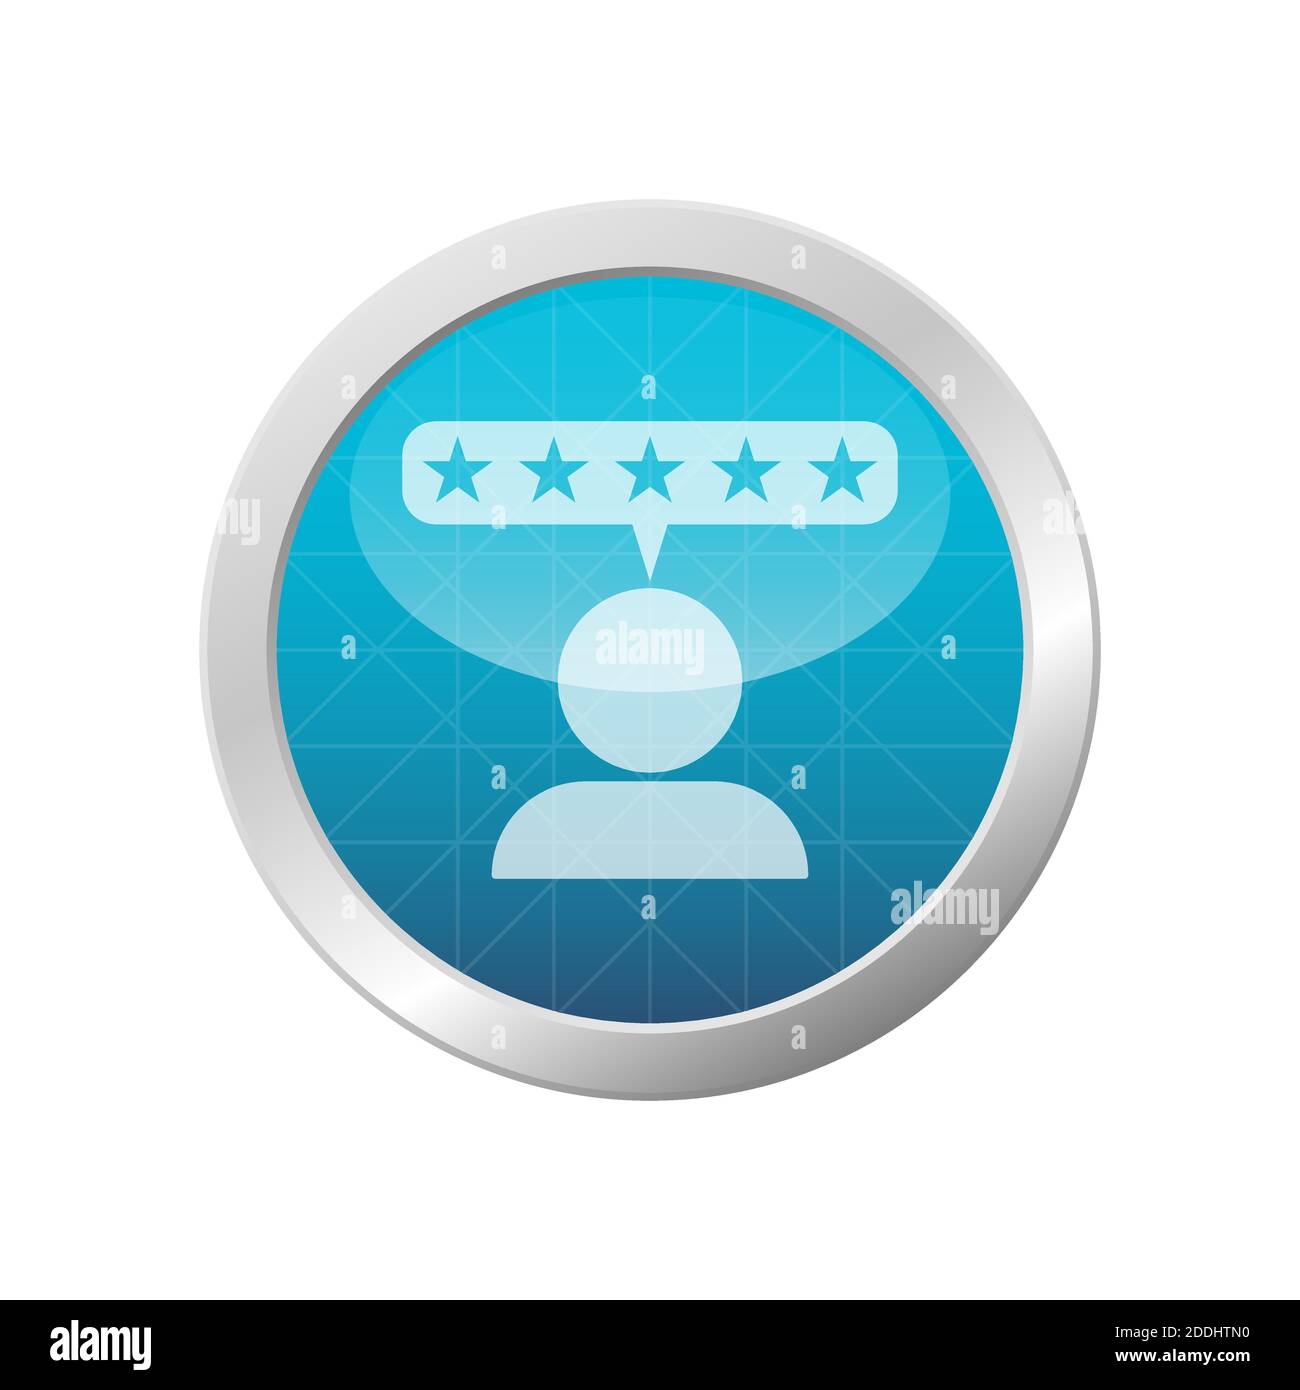 Icona delle recensioni a cinque stelle. Firma del cliente soddisfatta. Immagine vettoriale del cerchio azzurro. Illustrazione Vettoriale